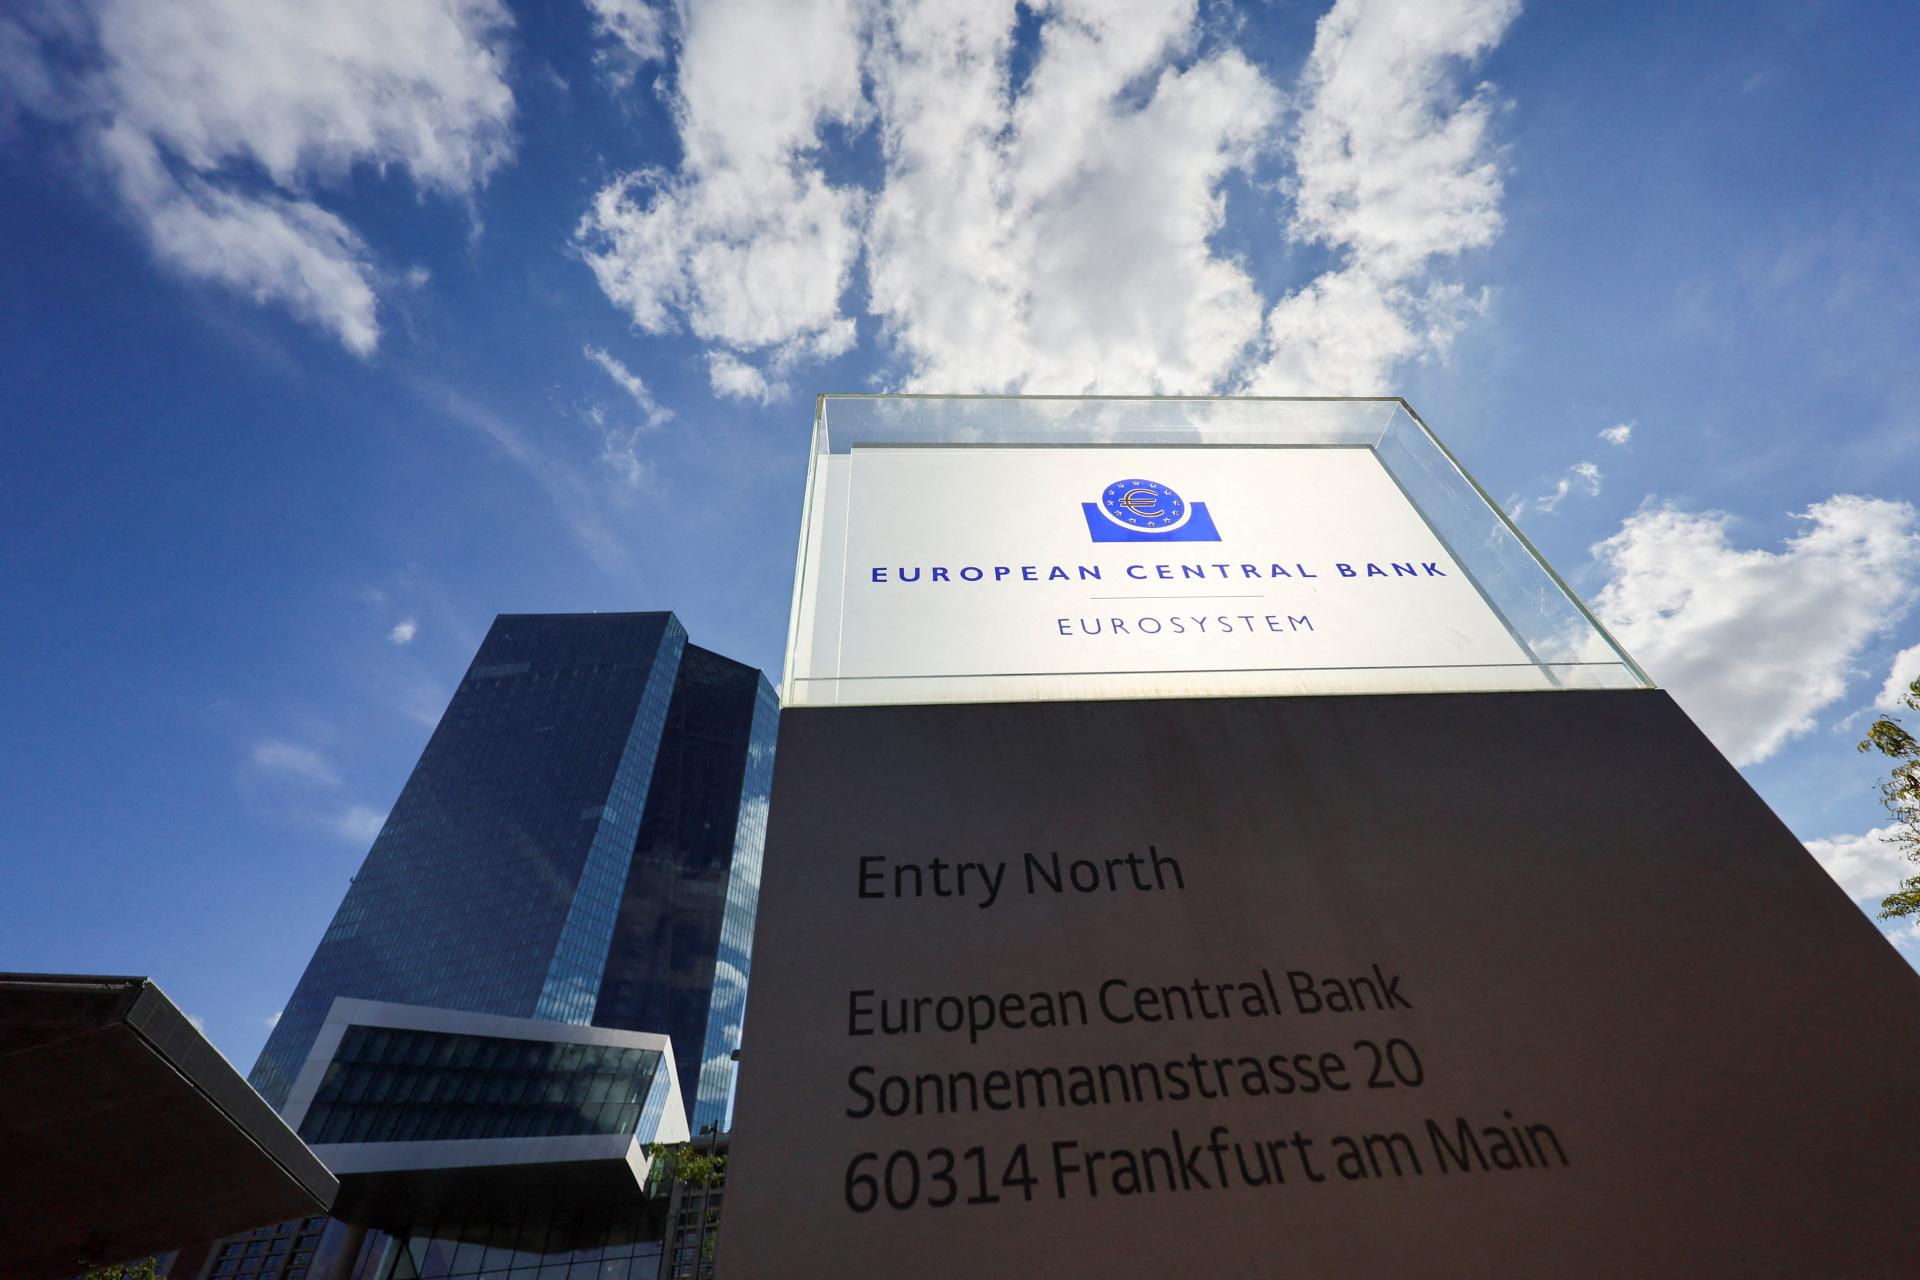 Riziká sú zvýšené. Európska centrálna banka varuje pred hrozbami pre finančnú stabilitu